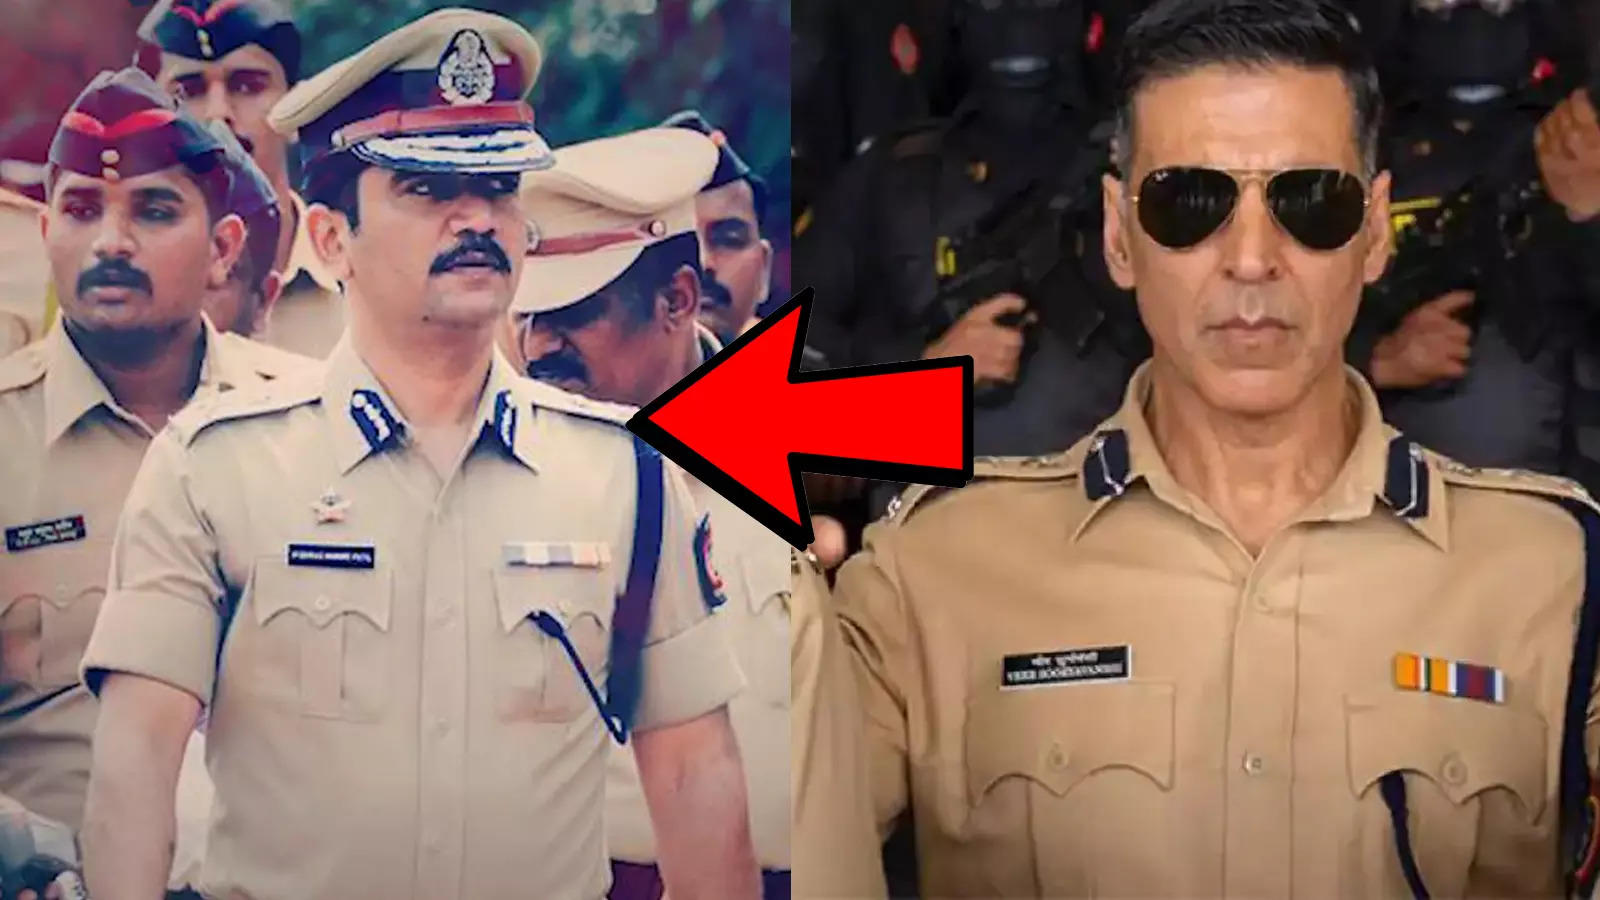   Bollywood stars Men in uniform Officer